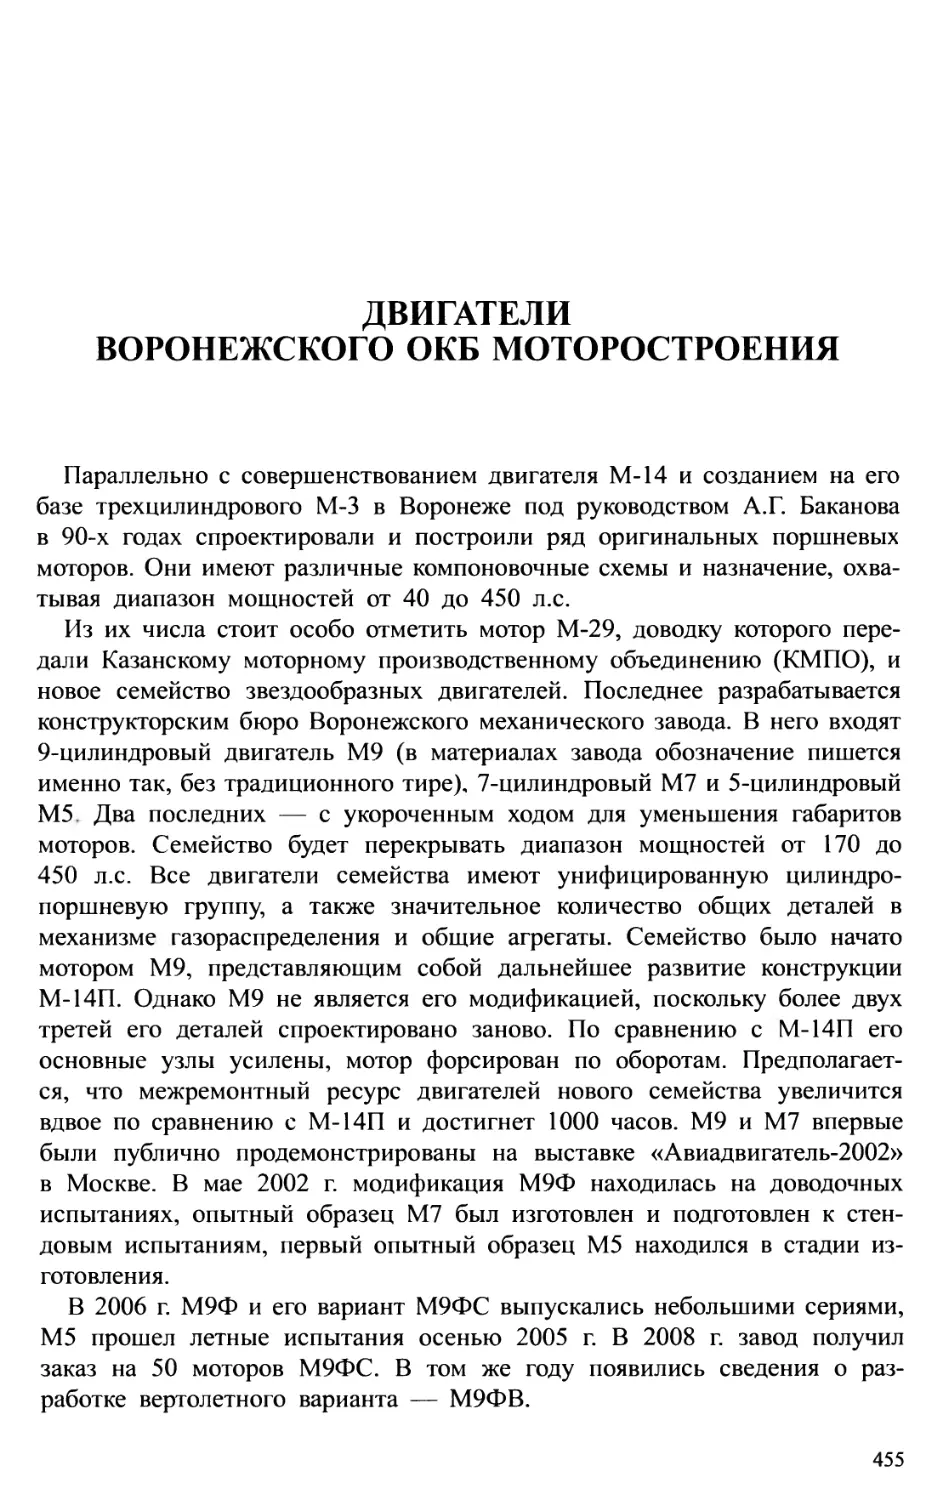 Двигатели Воронежского ОКБ моторостроения